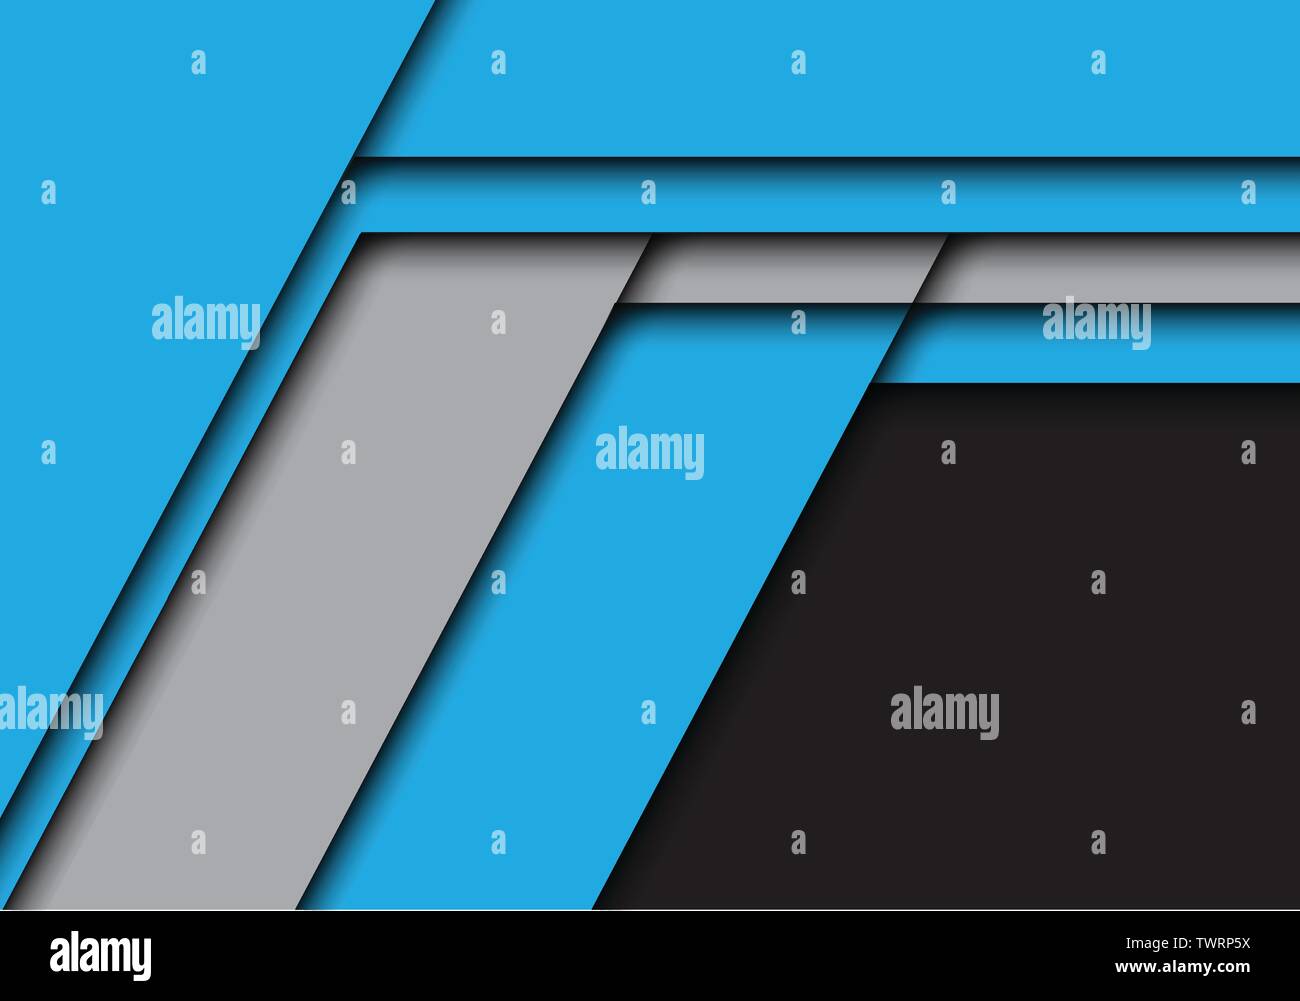 Abstract blue gris flèche double emploi avec un espace blanc noir moderne design futuristic background vector illustration. Illustration de Vecteur